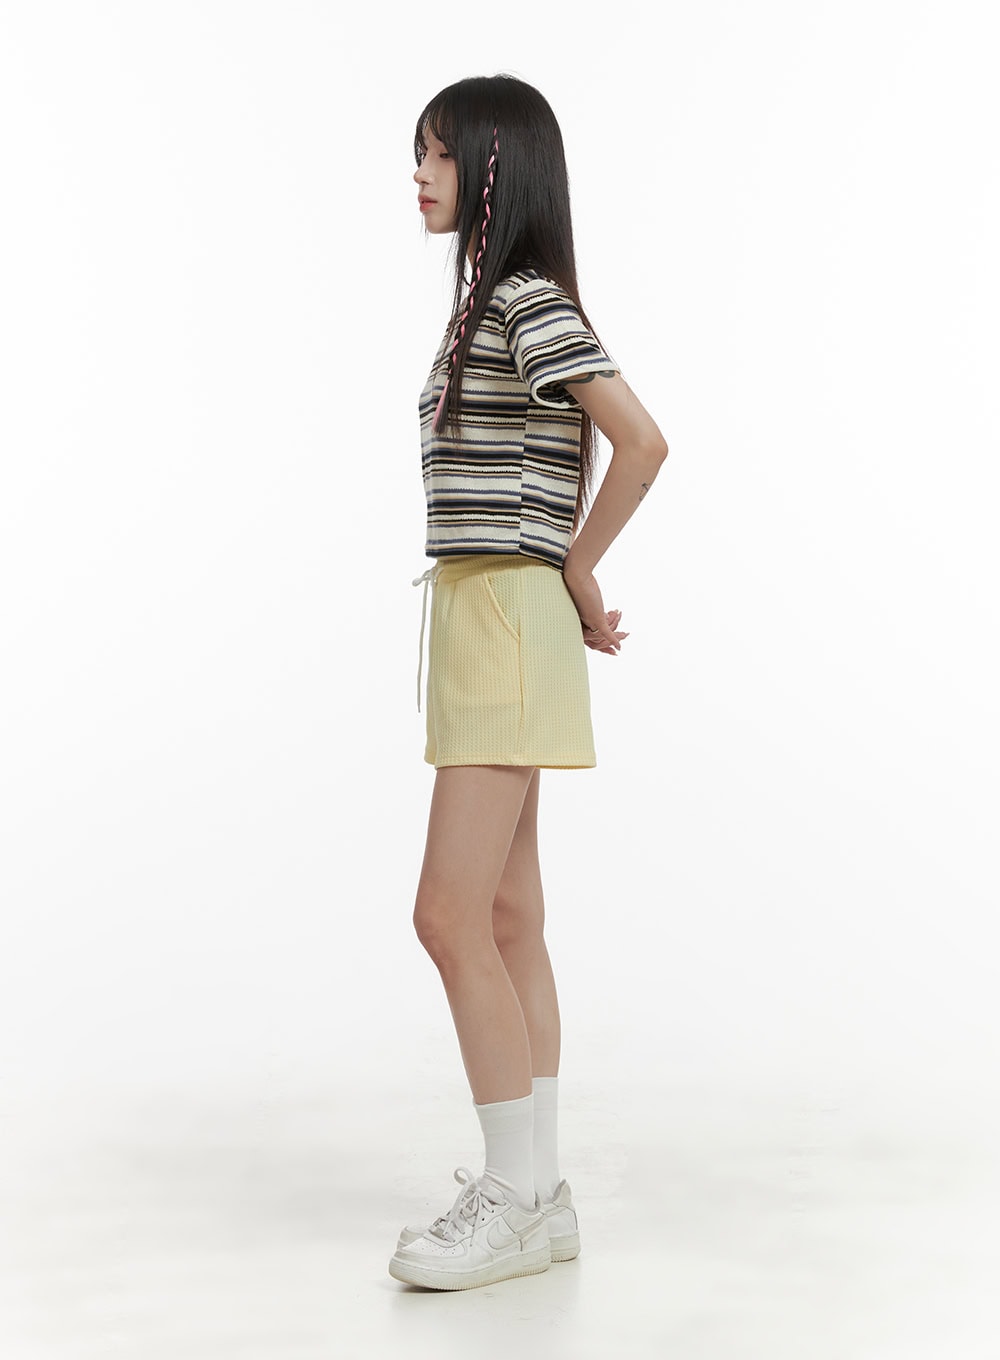 banding-cotton-mini-shorts-oa426